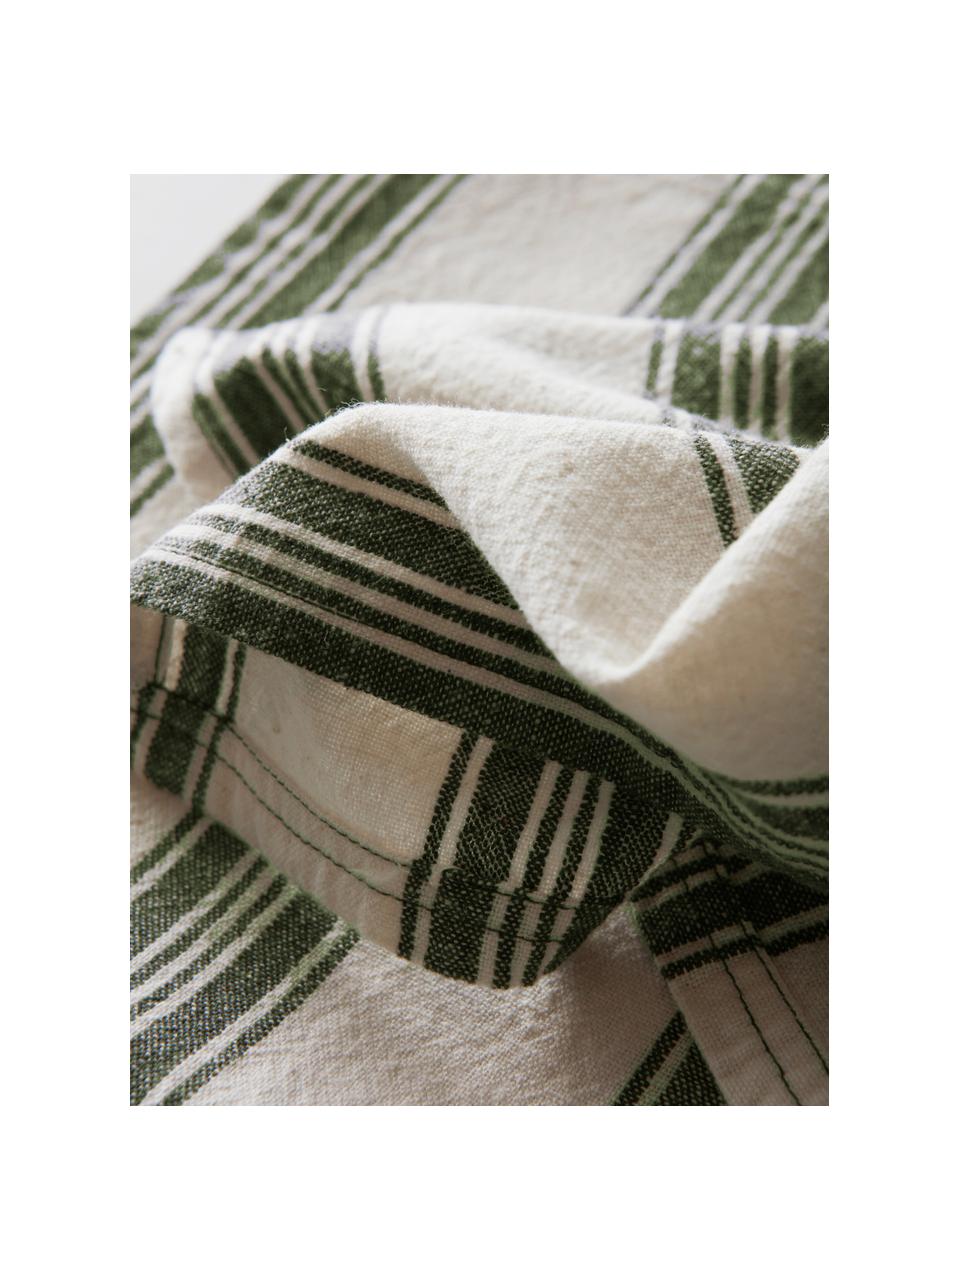 Serviettes de table en coton/lin Abigail, 2 pièces, Blanc cassé, vert